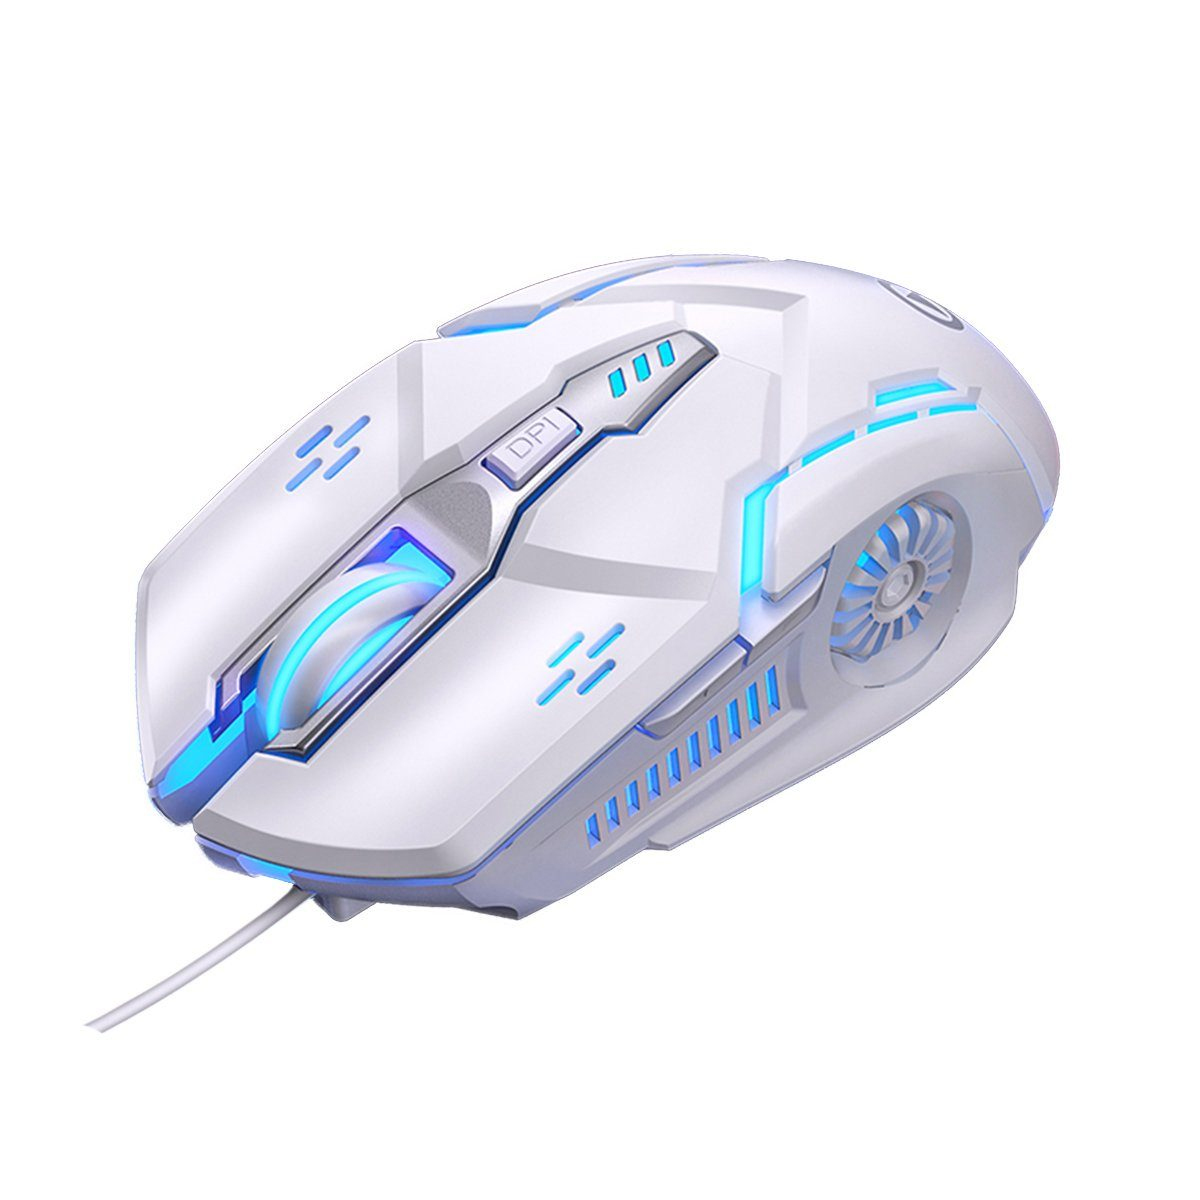 KINSI Gaming-Maus,mechanische Maus,kabelgebundene Maus,6-Tasten Maus Maus, weiß Gaming-Maus,Lautlose